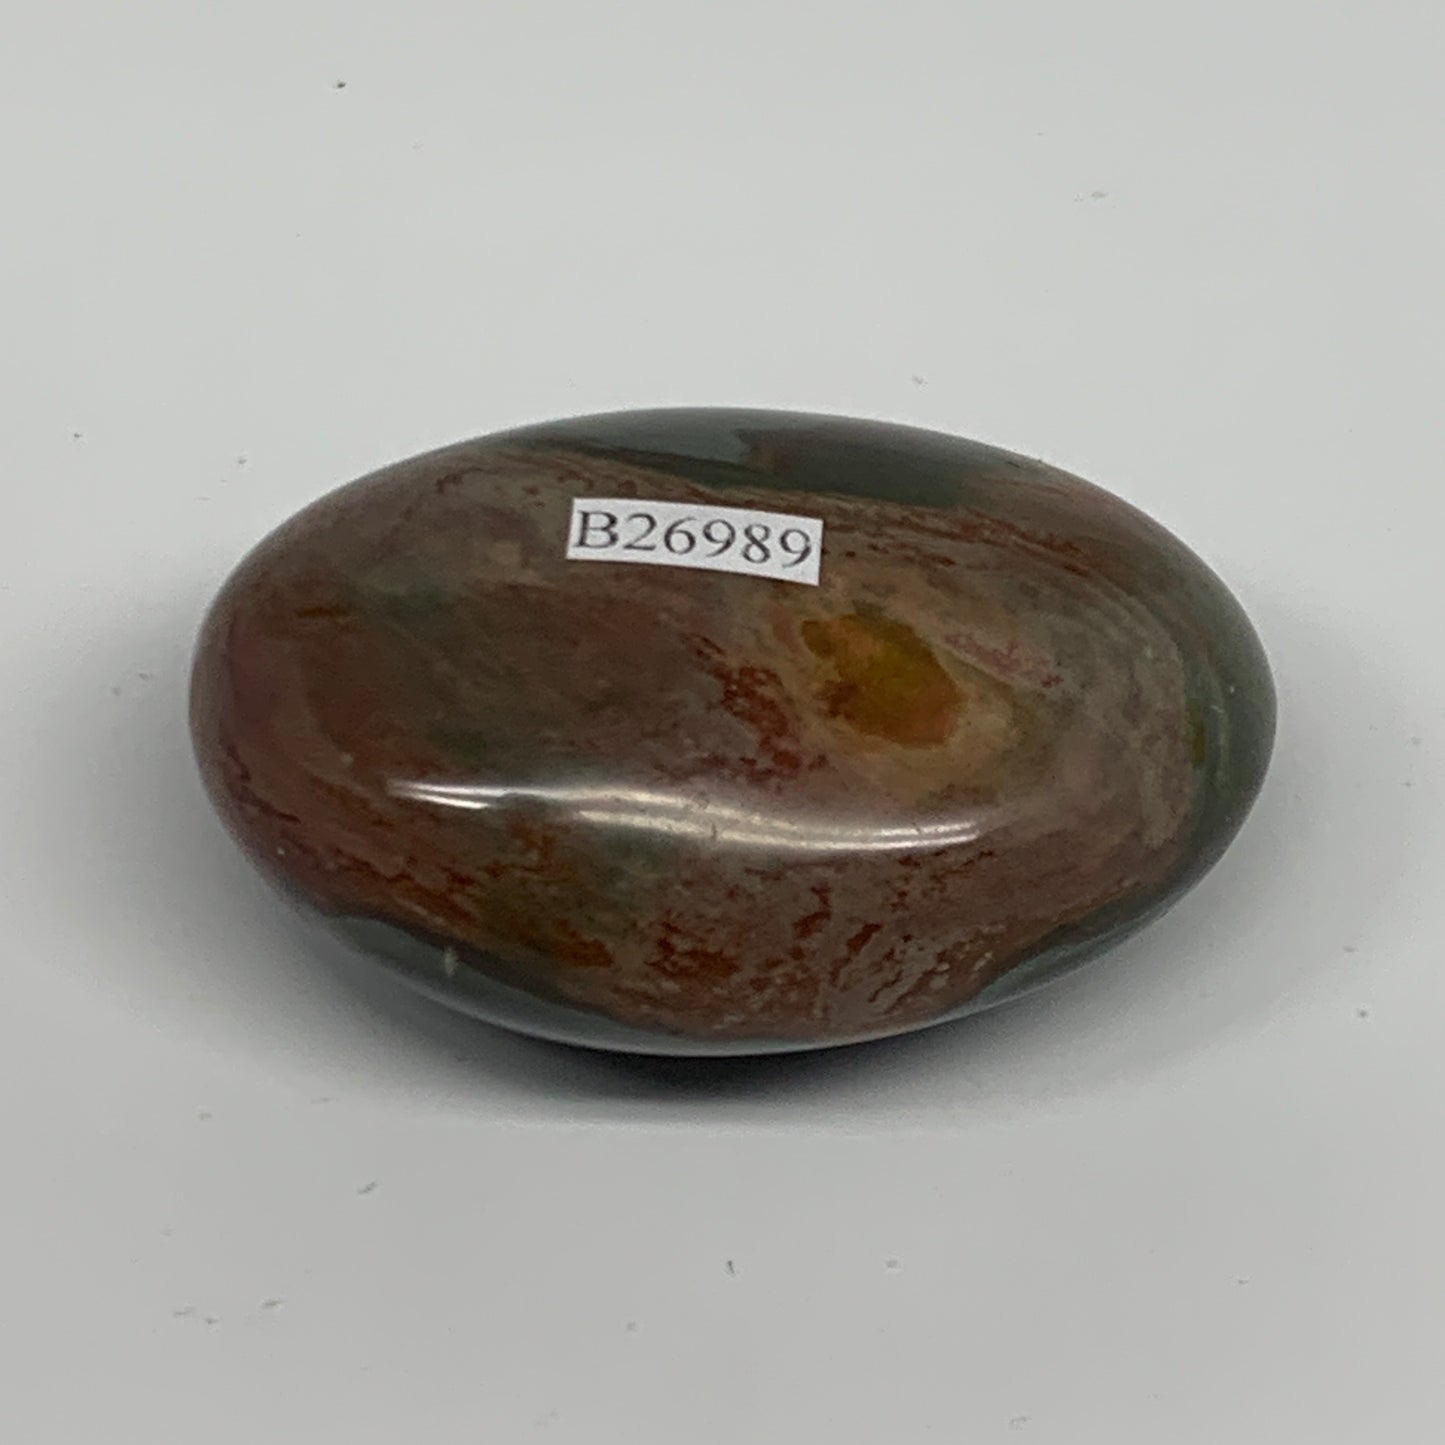 108.6g, 2.5"x1.8"x1.2", Polychrome Jasper Palm-Stone Reiki @Madagascar, B26989